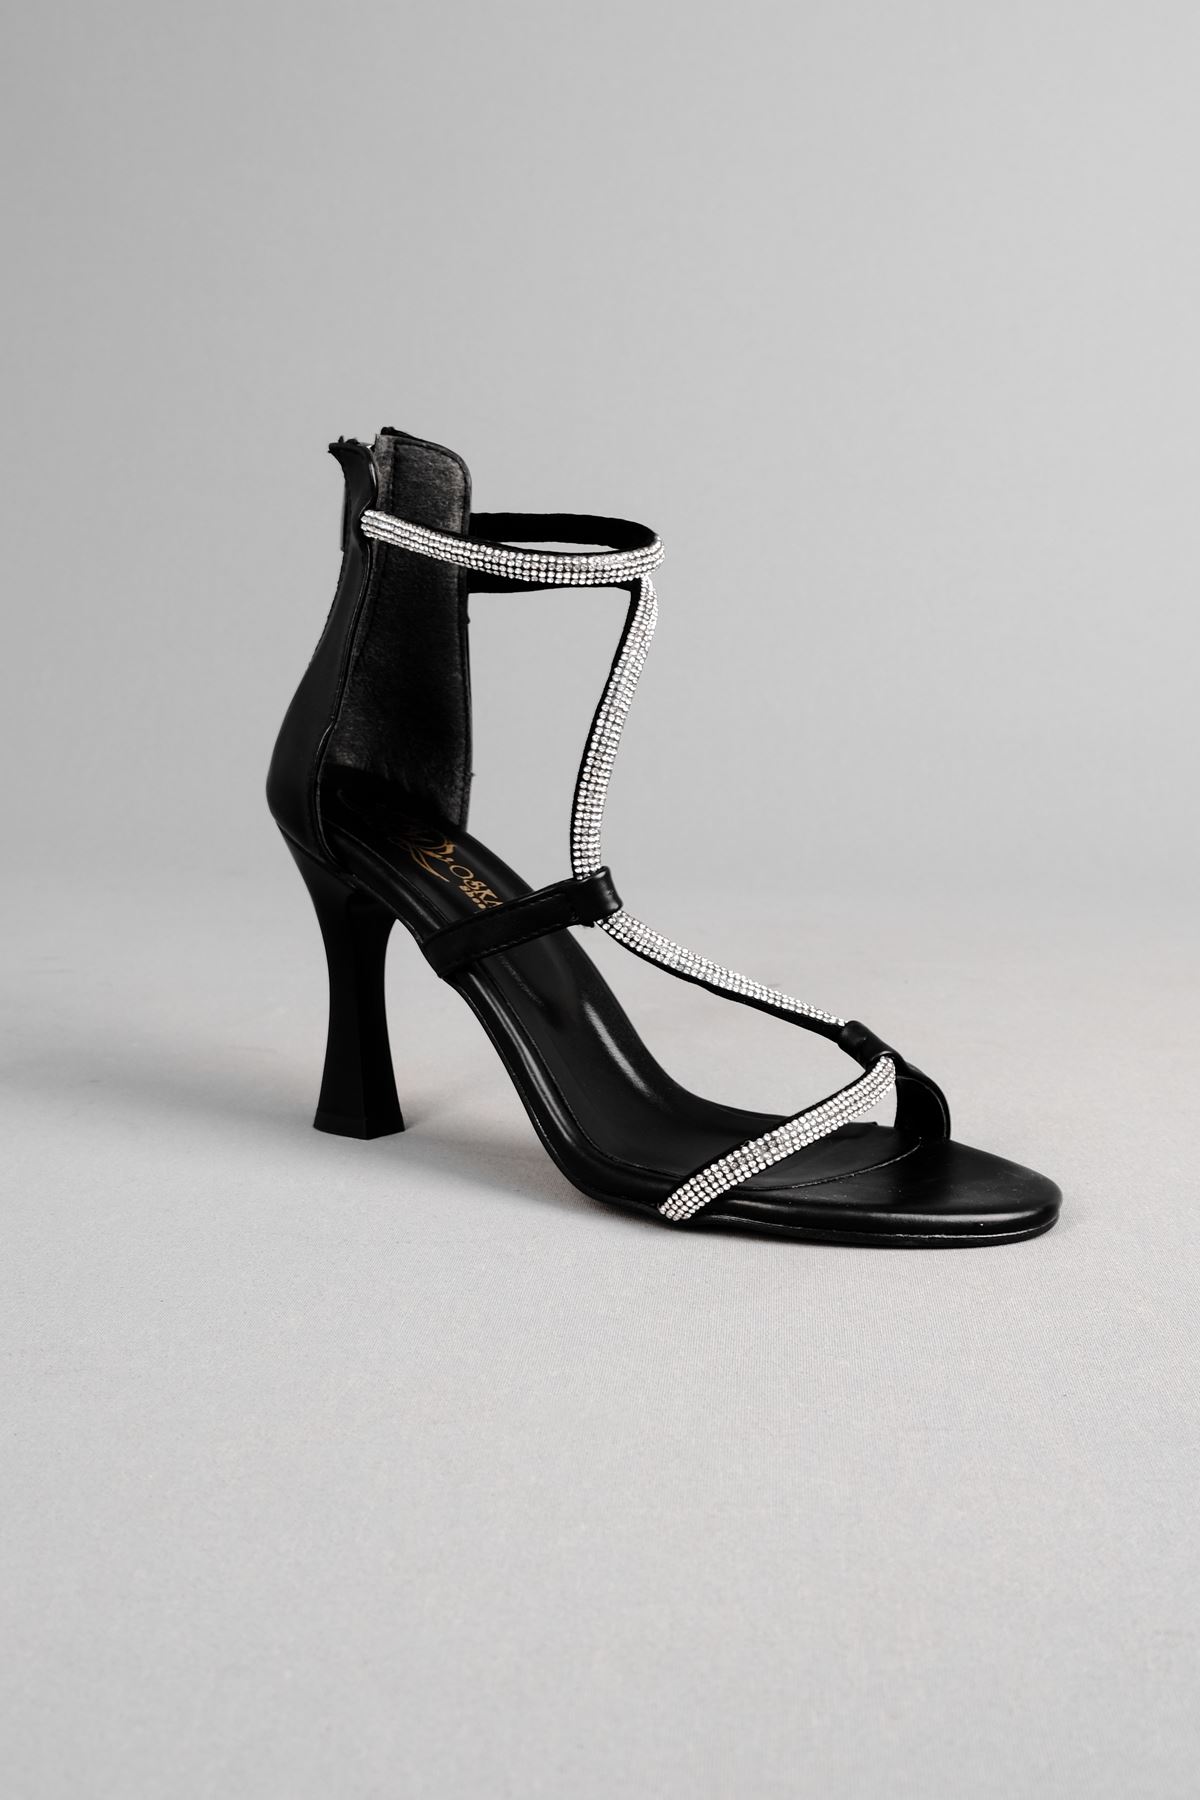 Twelve Kadın Topuklu Ayakkabı Taşlı Arkaı Fermuarlı-siyah